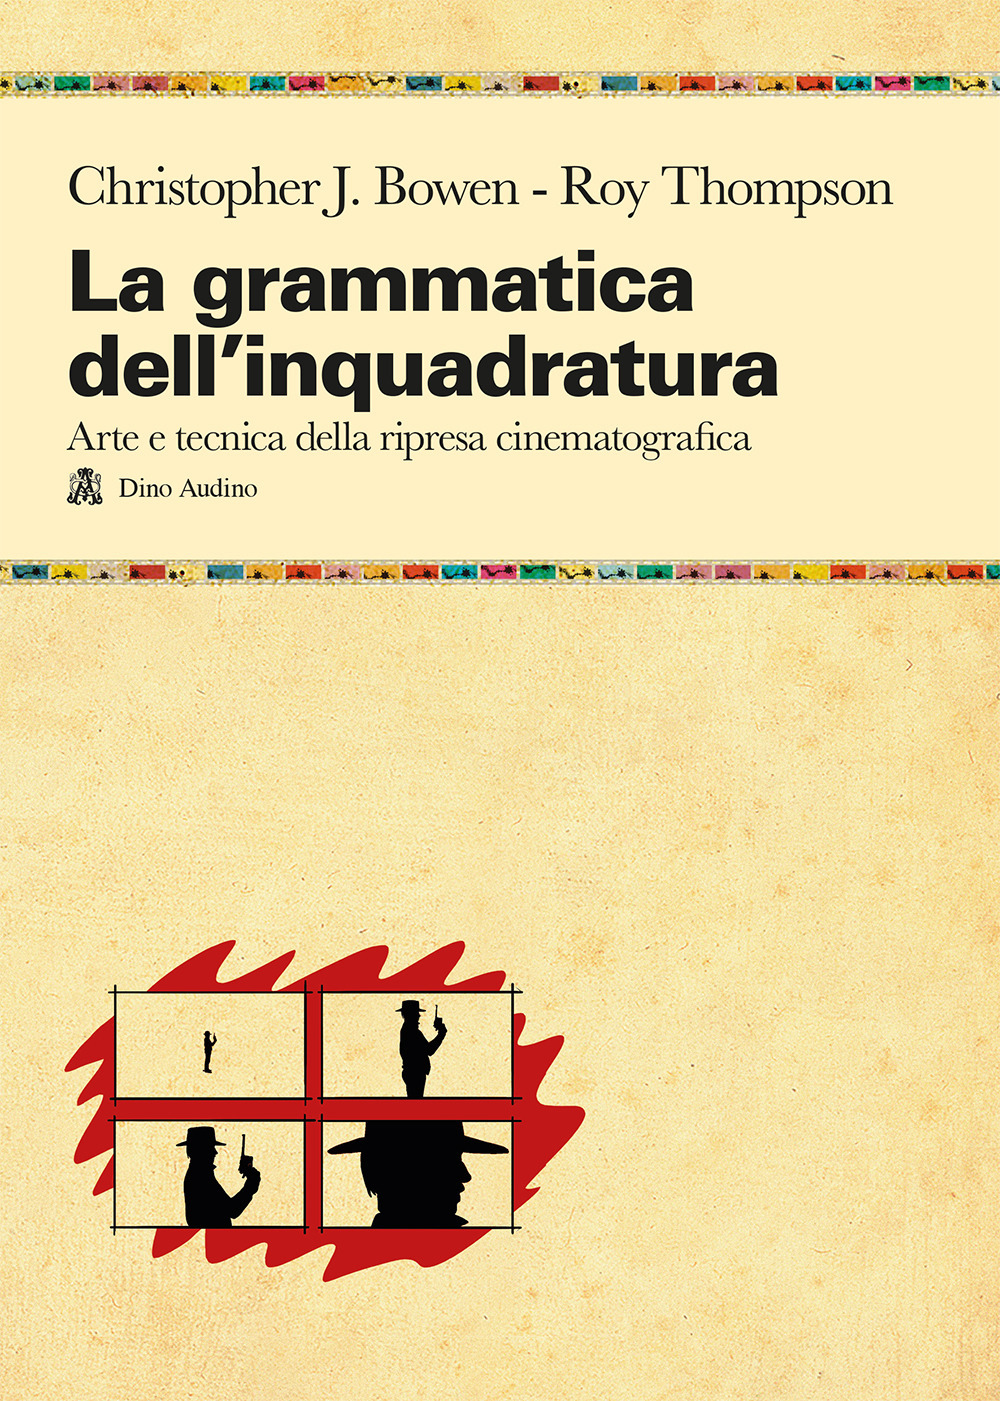 La grammatica dell'inquadratura. Il manuale di composizione cinematografica più completo